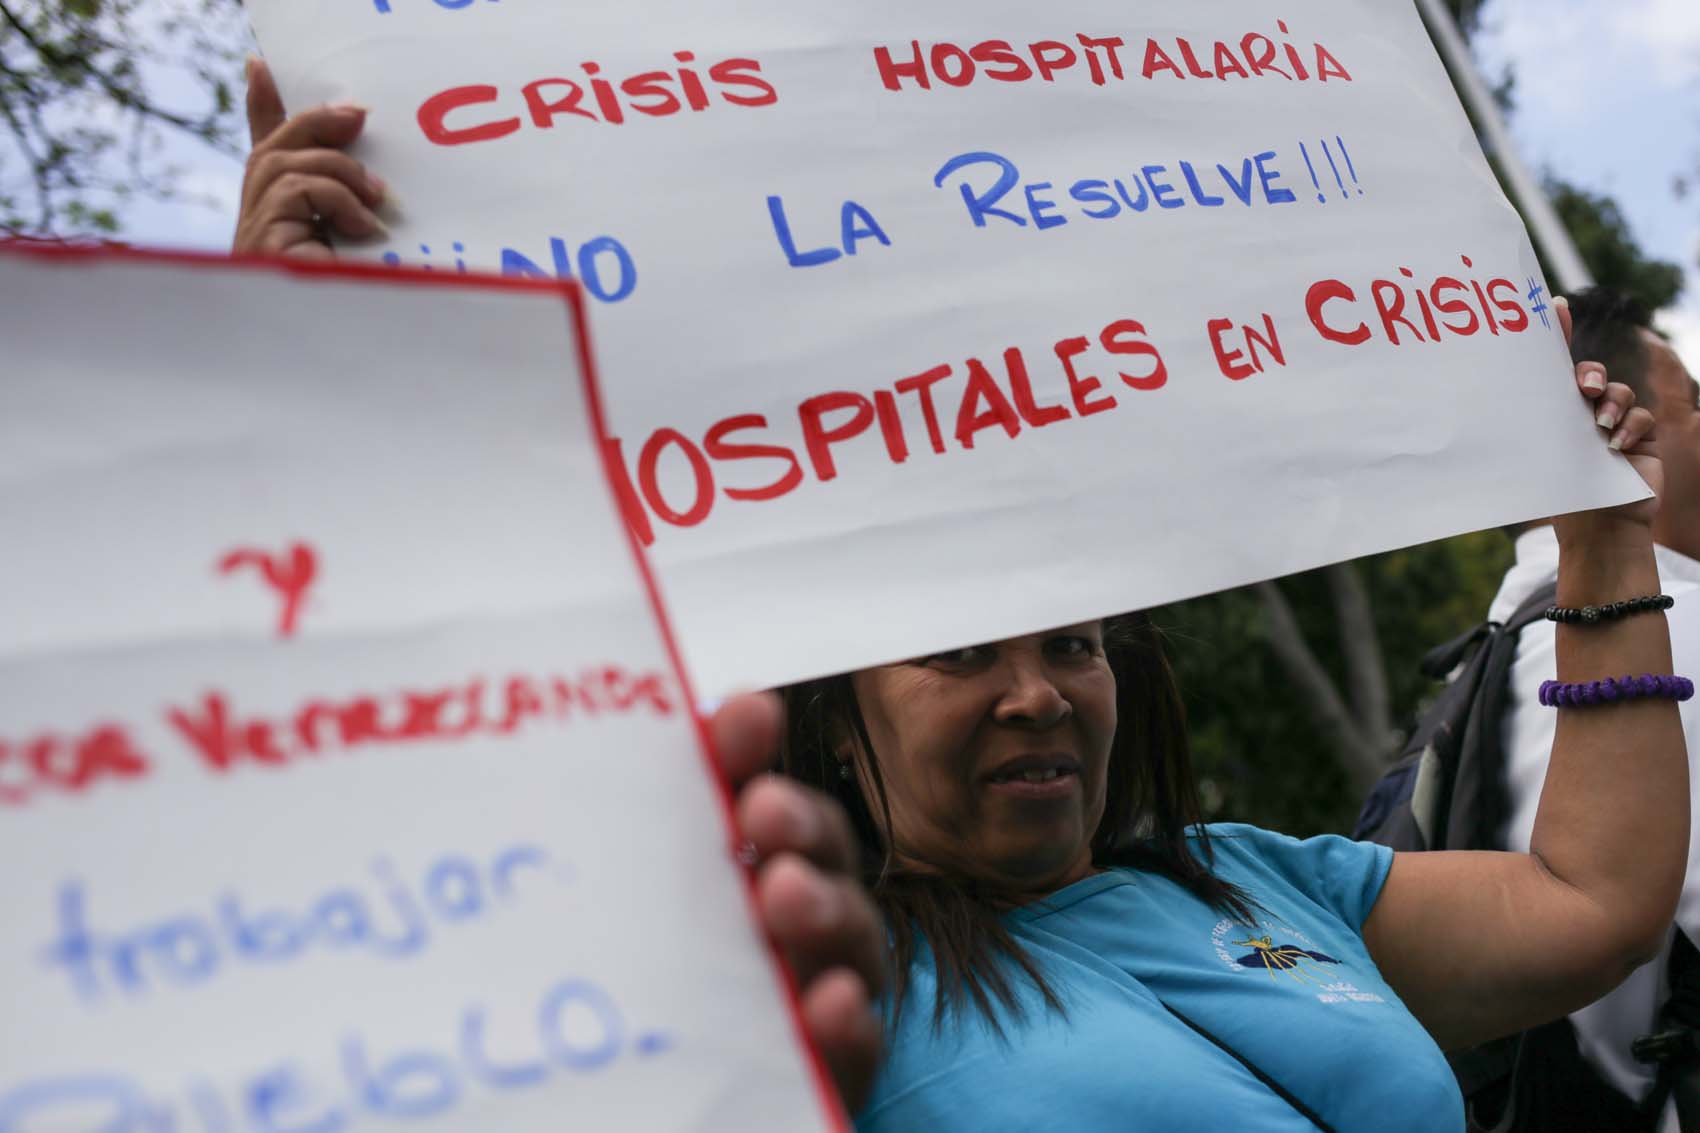 Sector Salud se activa con “Las ideas de todos” para denunciar la crisis del sistema sanitario